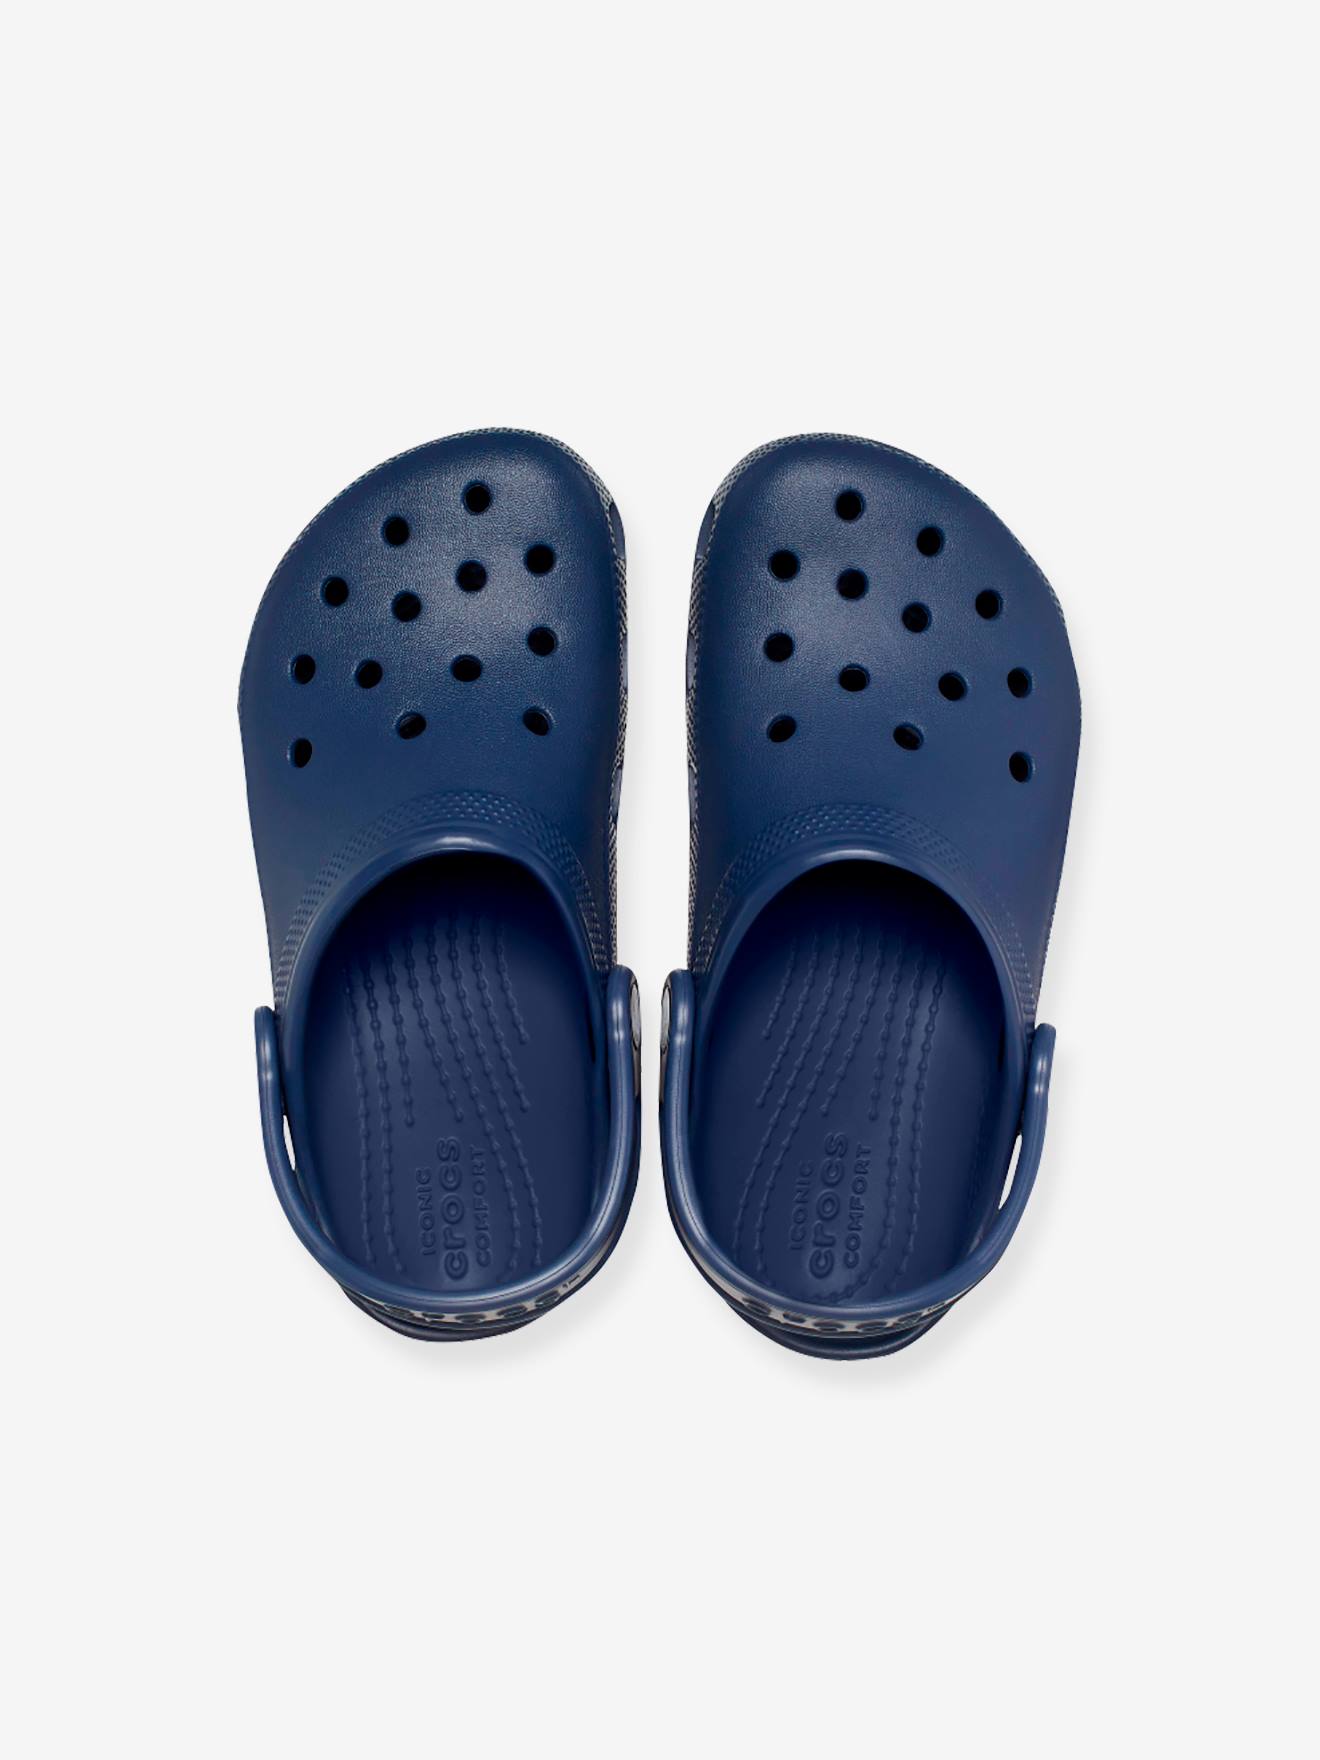 Schoenen Jongensschoenen Sandalen Youth navy blue crocs sandals new size 8 